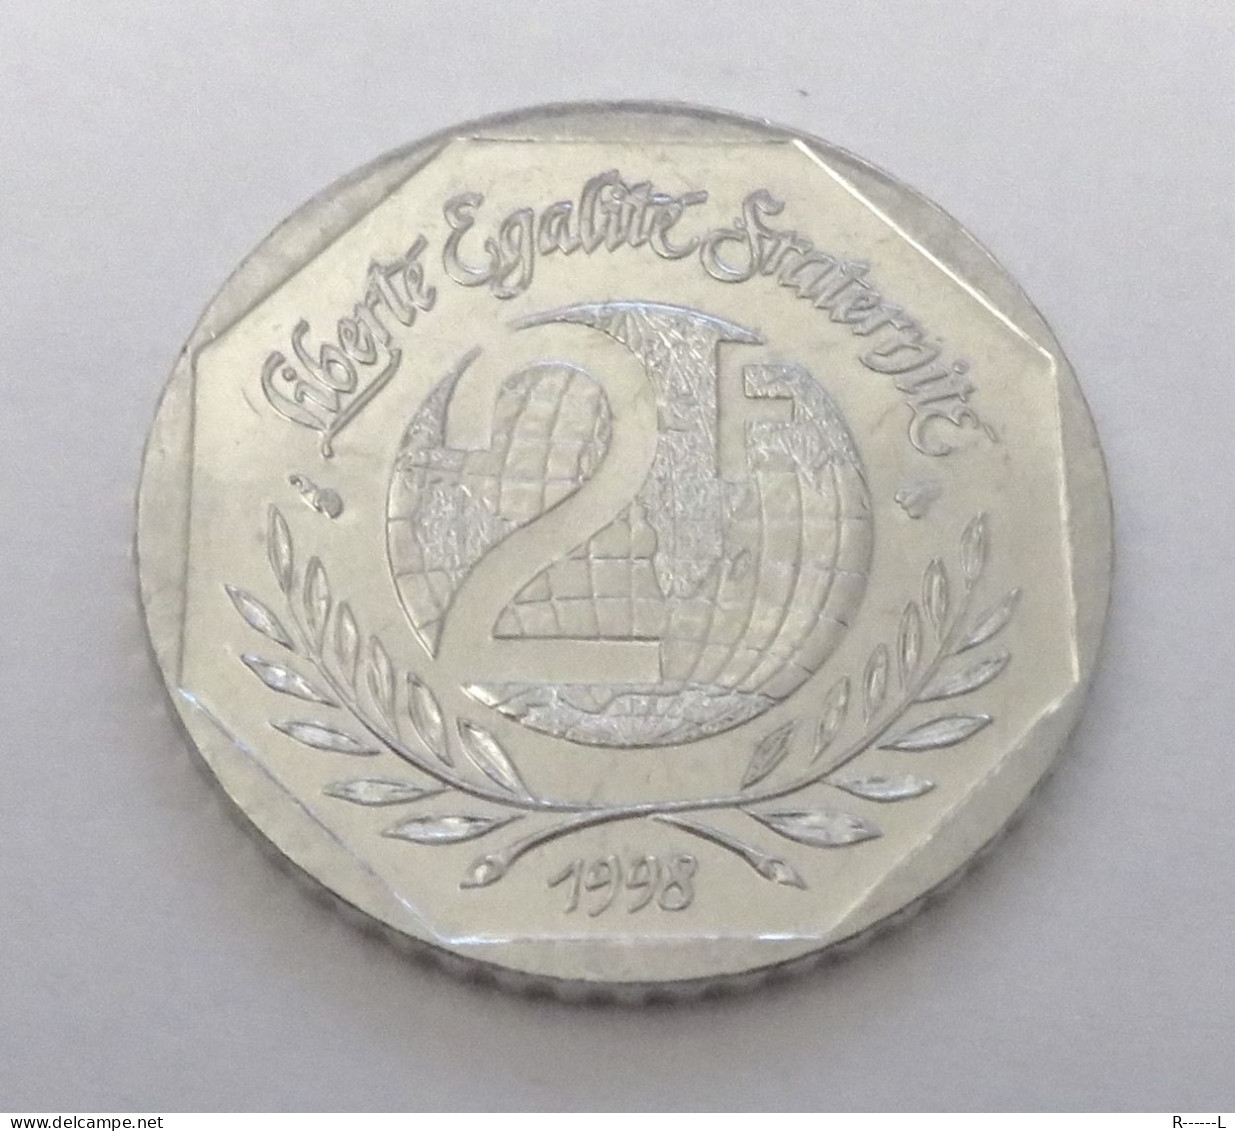 2 Francs 1998 50ème Anniversaire Des Droits De L'Homme (1948-1998) - 2 Francs